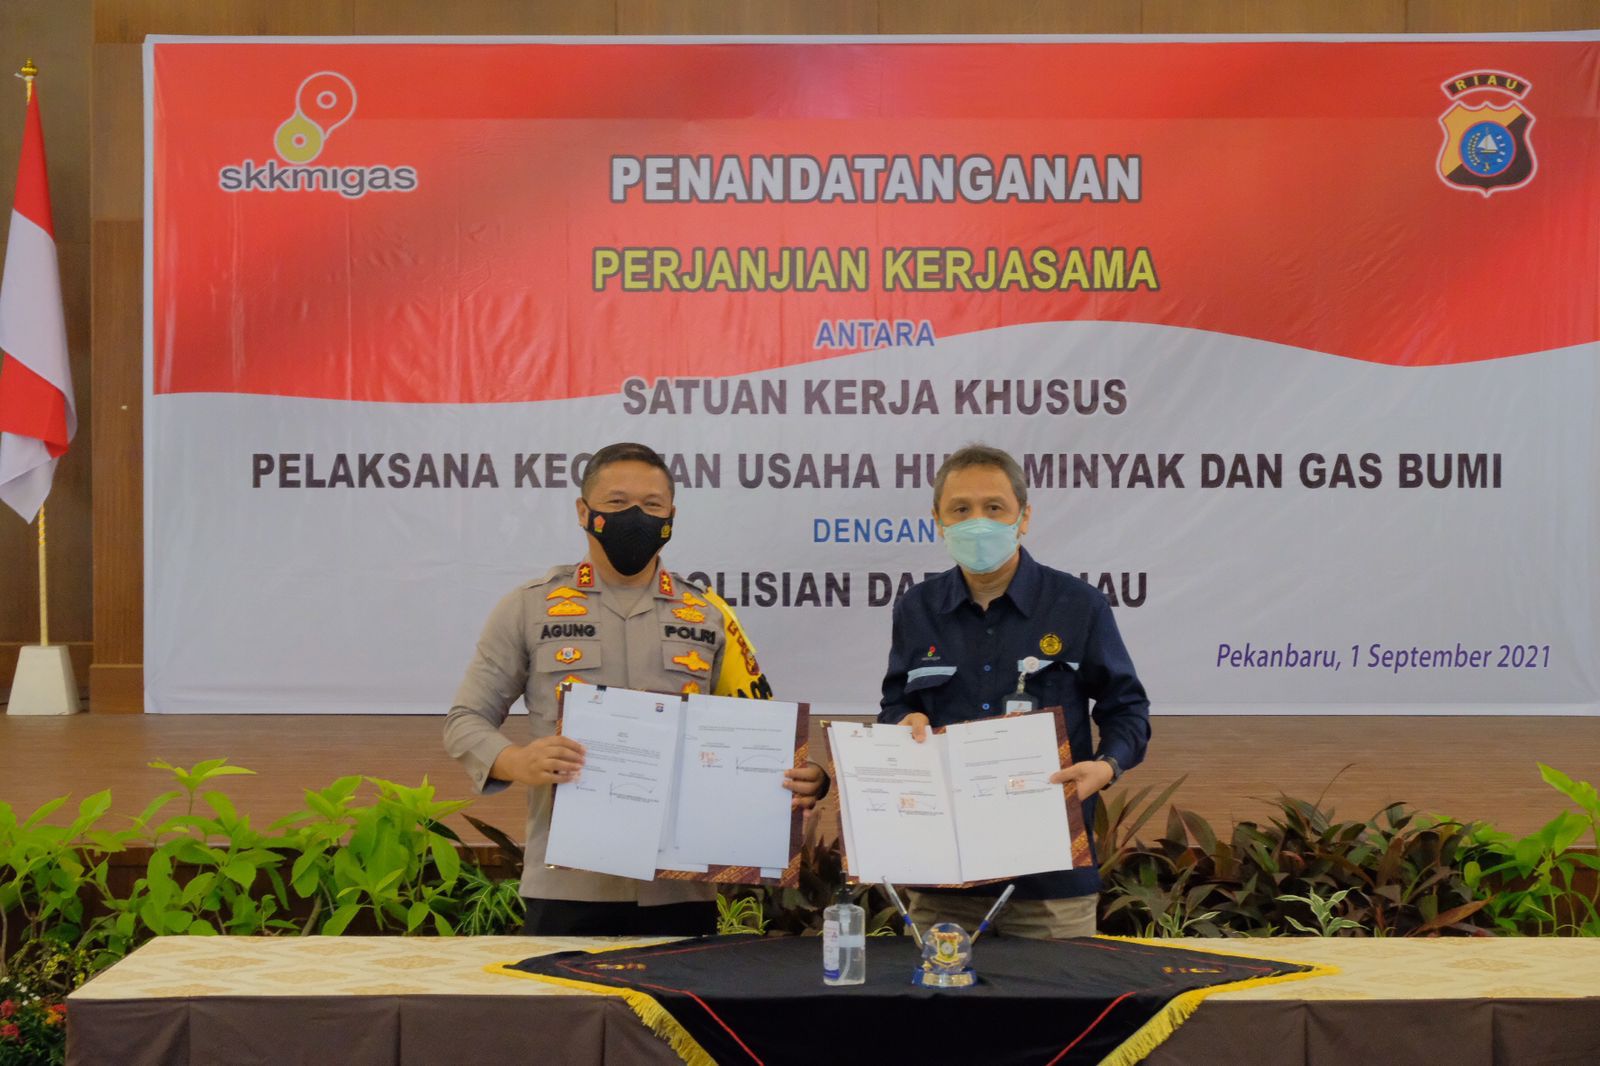 Kapolda Riau Komit Kelola Keamanan Secara Baik, Efisien dan Modern